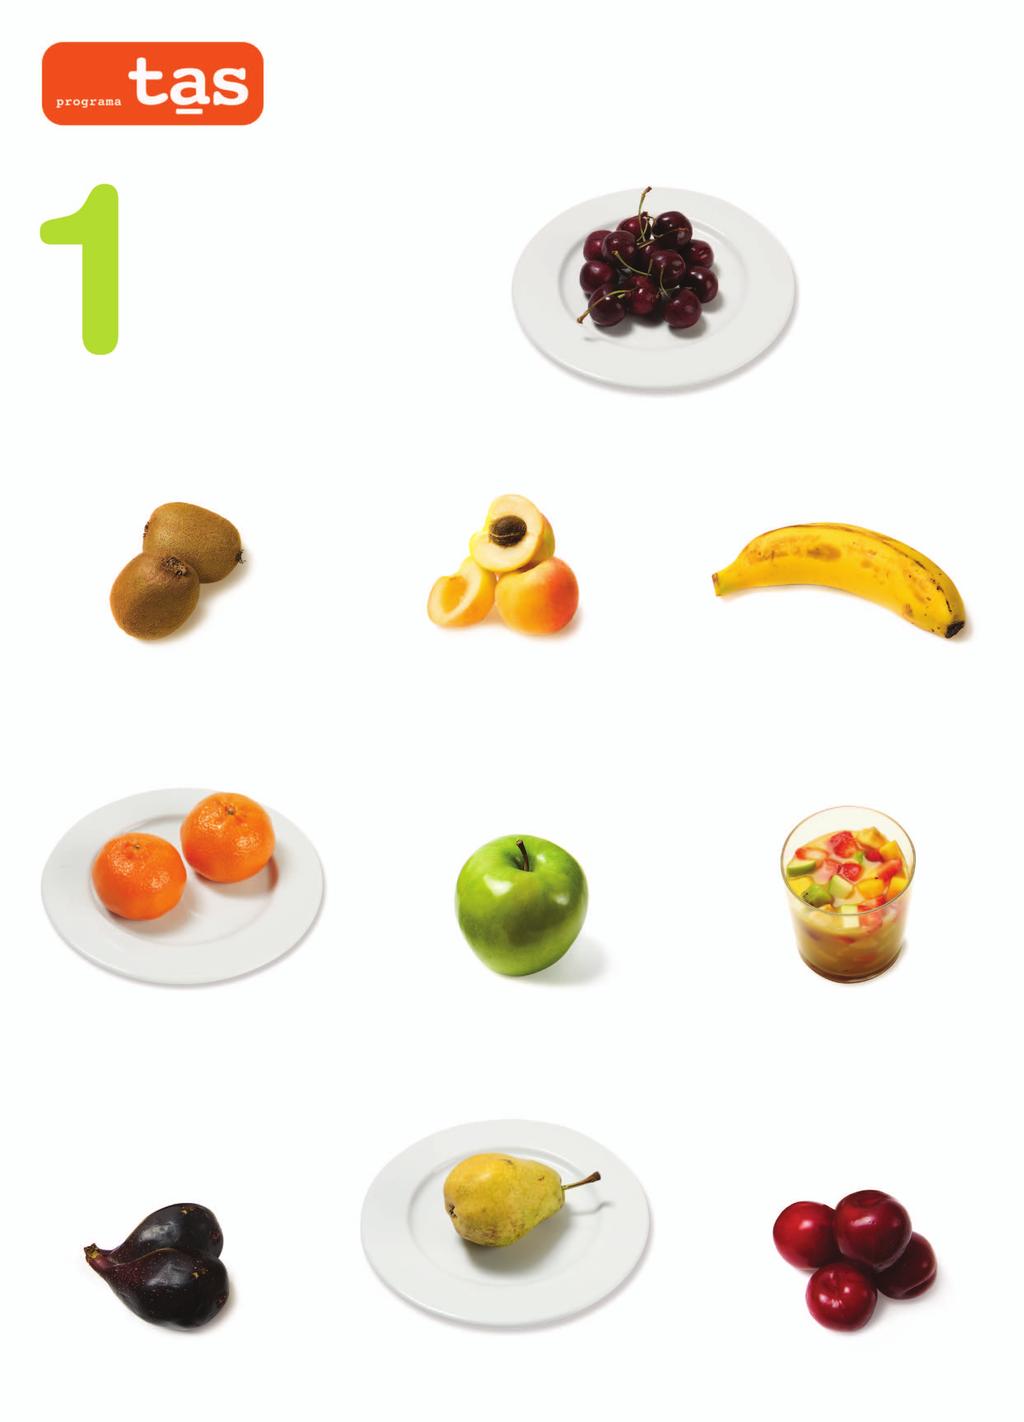 FRUTAS Para ayudarte a contar, considera una ración de fruta cualquiera de los siguientes ejemplos: 1 plato pequeño de